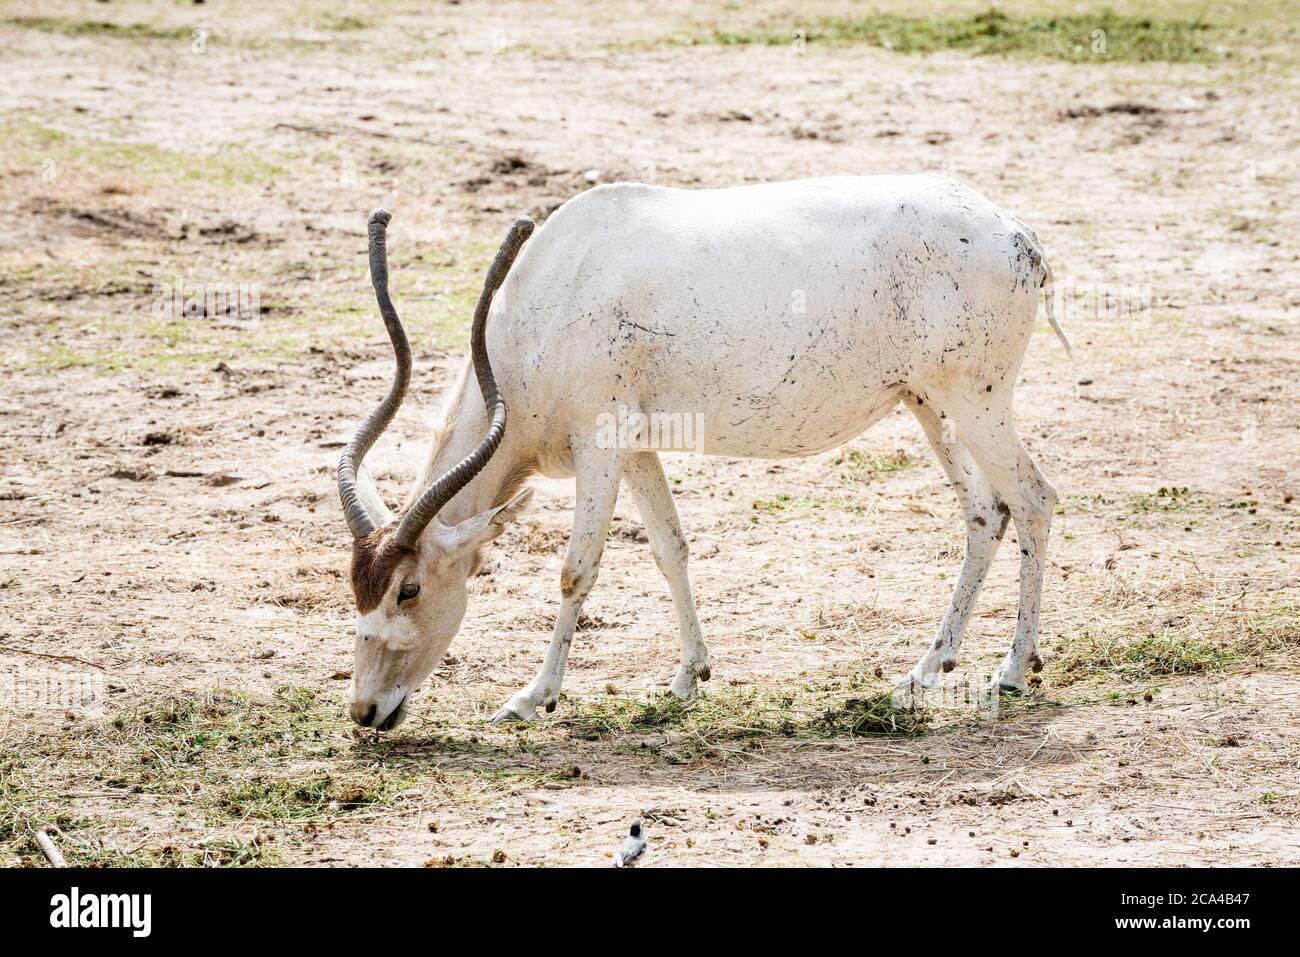 Der Addax (Addax nasomaculatus) ist eine Antilope der Gattung Addax, die in der Sahara lebt. Stockfoto